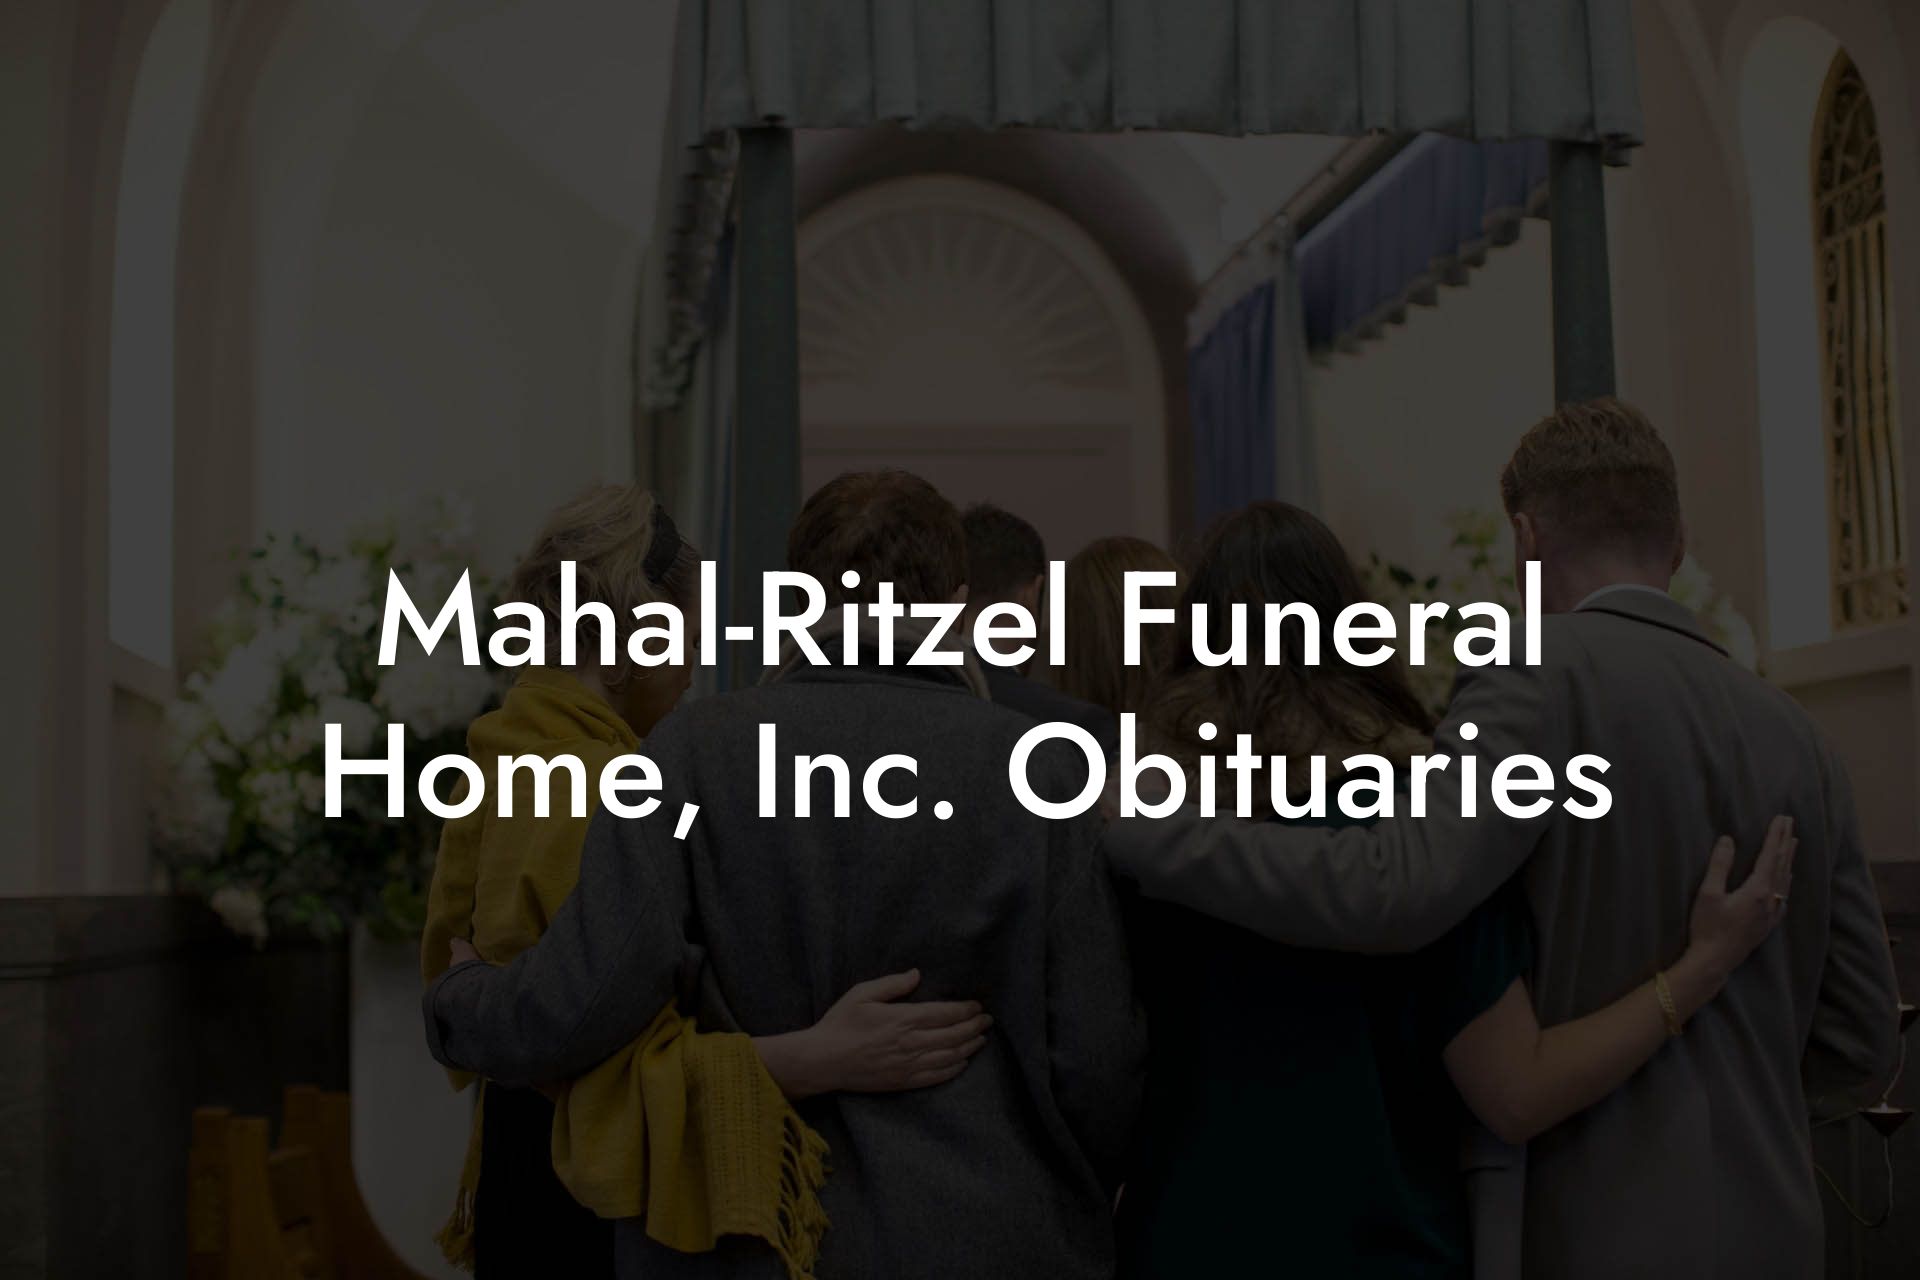 Mahal-Ritzel Funeral Home, Inc. Obituaries